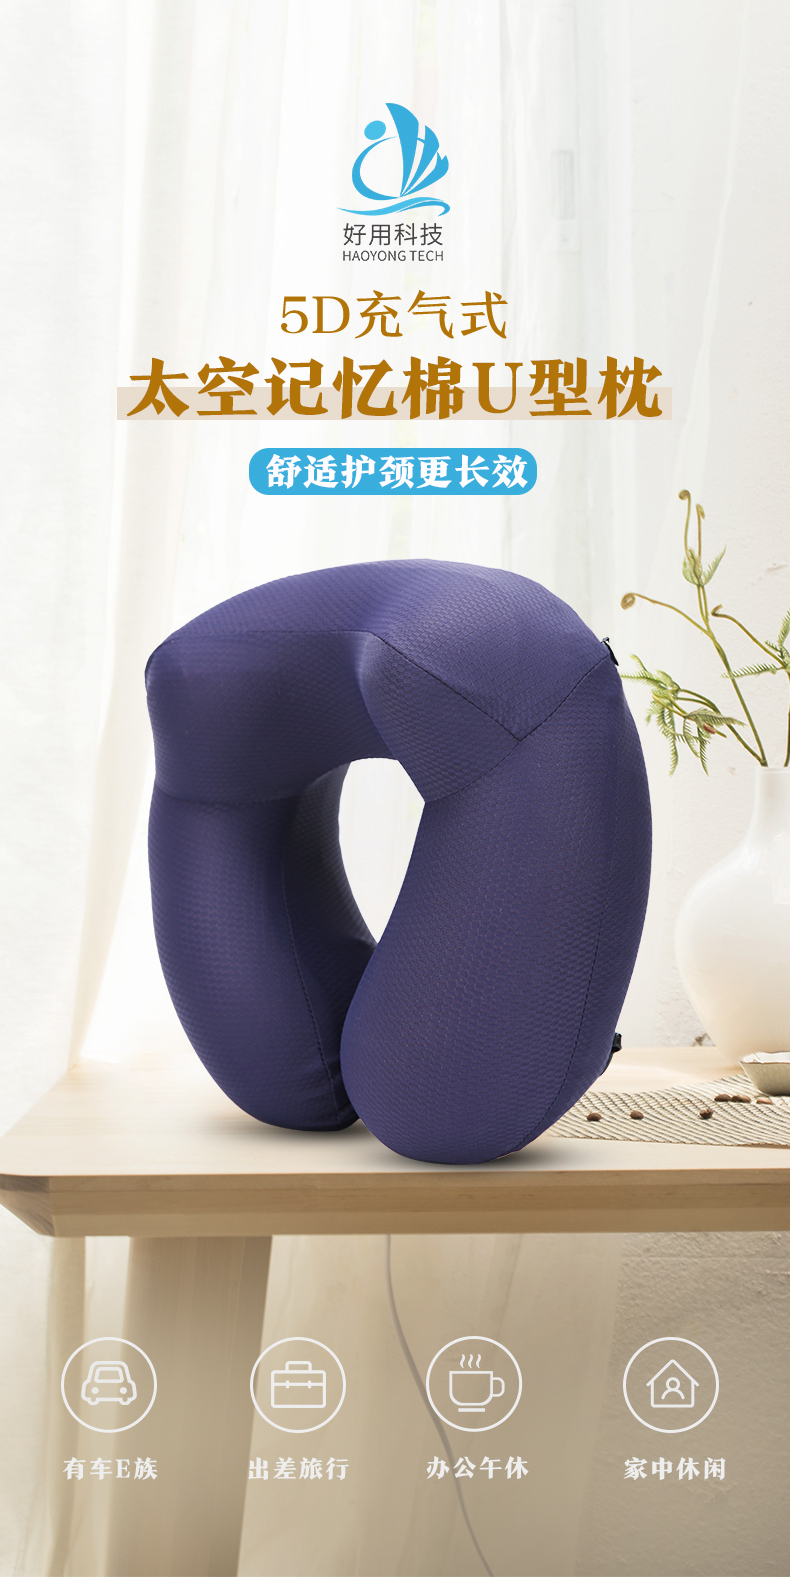 我们推荐便携U形枕代理_记忆u形枕相关-广州好用科技有限公司